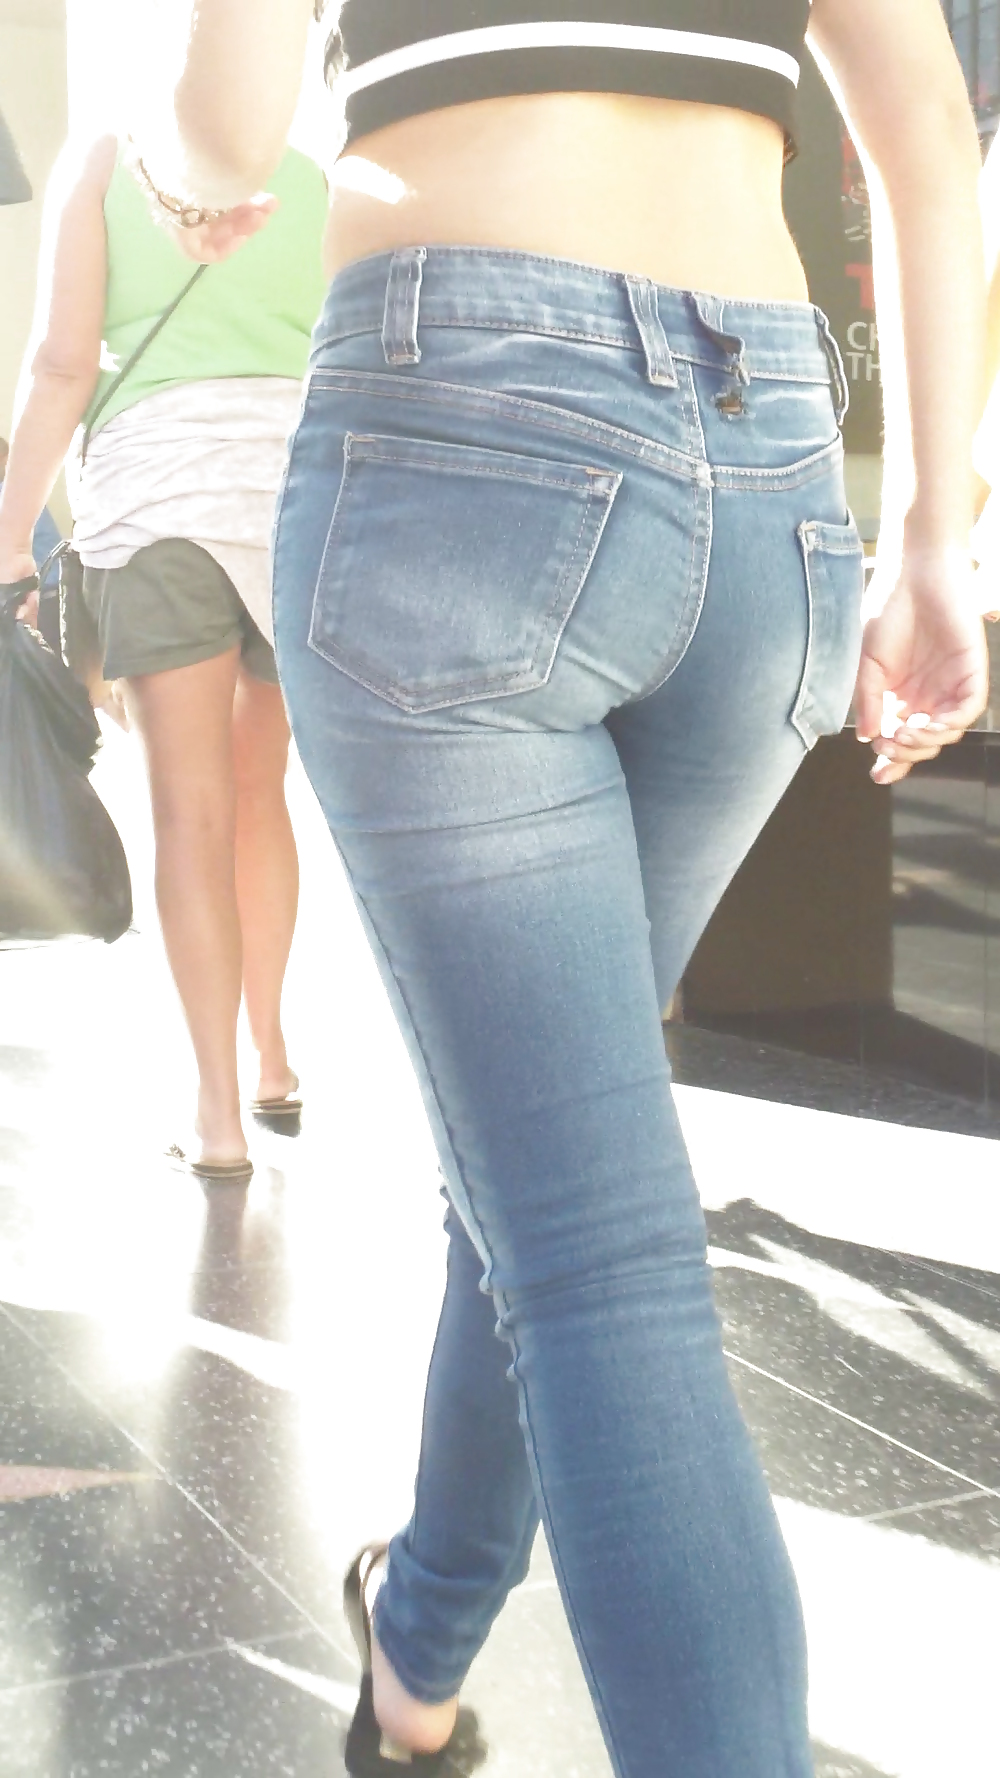 Beautiful cute tight teen ass & butt in blue jeans #21921932